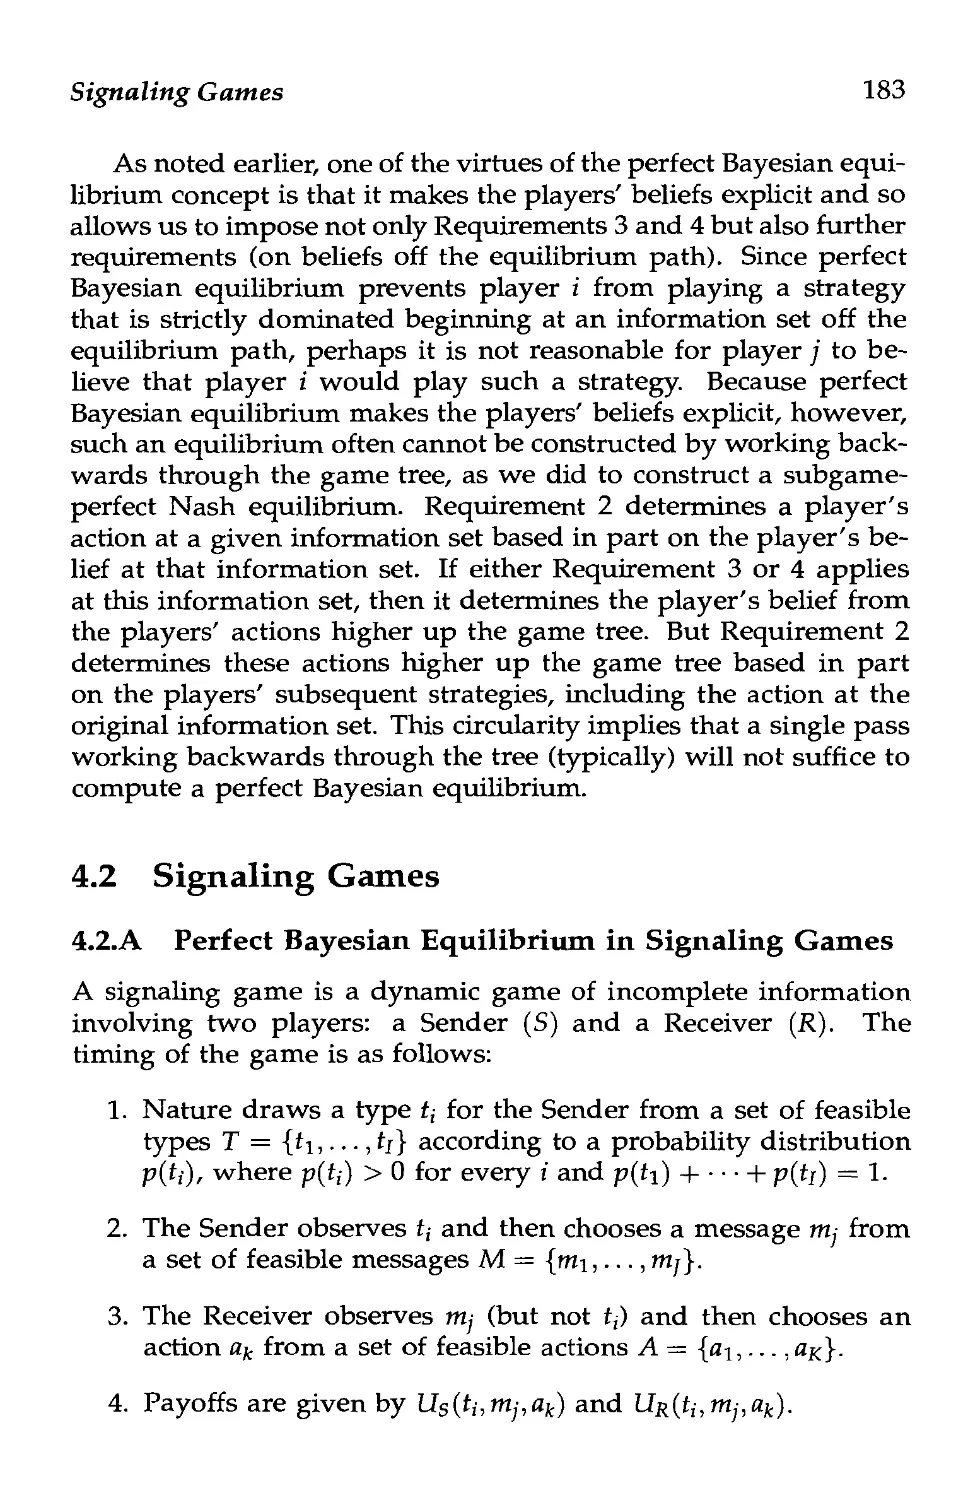 4.2 Signaling Games